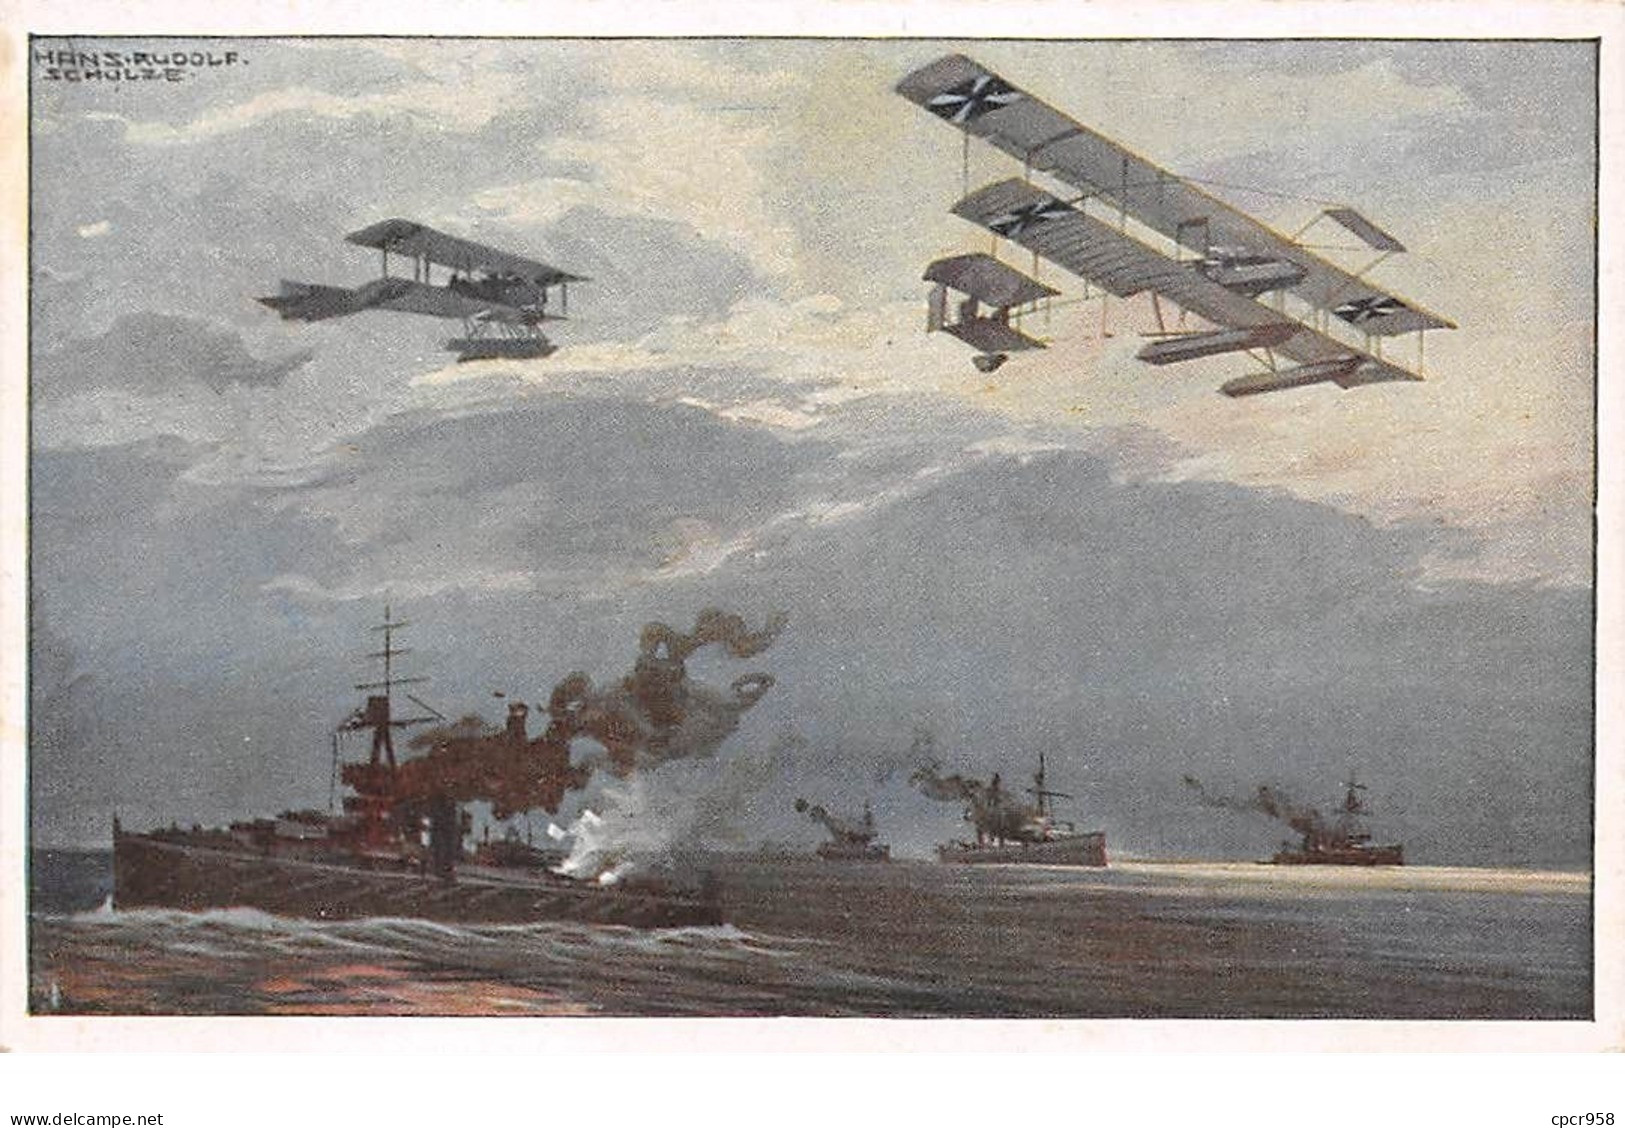 Illustrateur - N°68291 - Schulze - Avions Au-dessus De Bateaux De Guerre - Schulze, Hans Rudolf